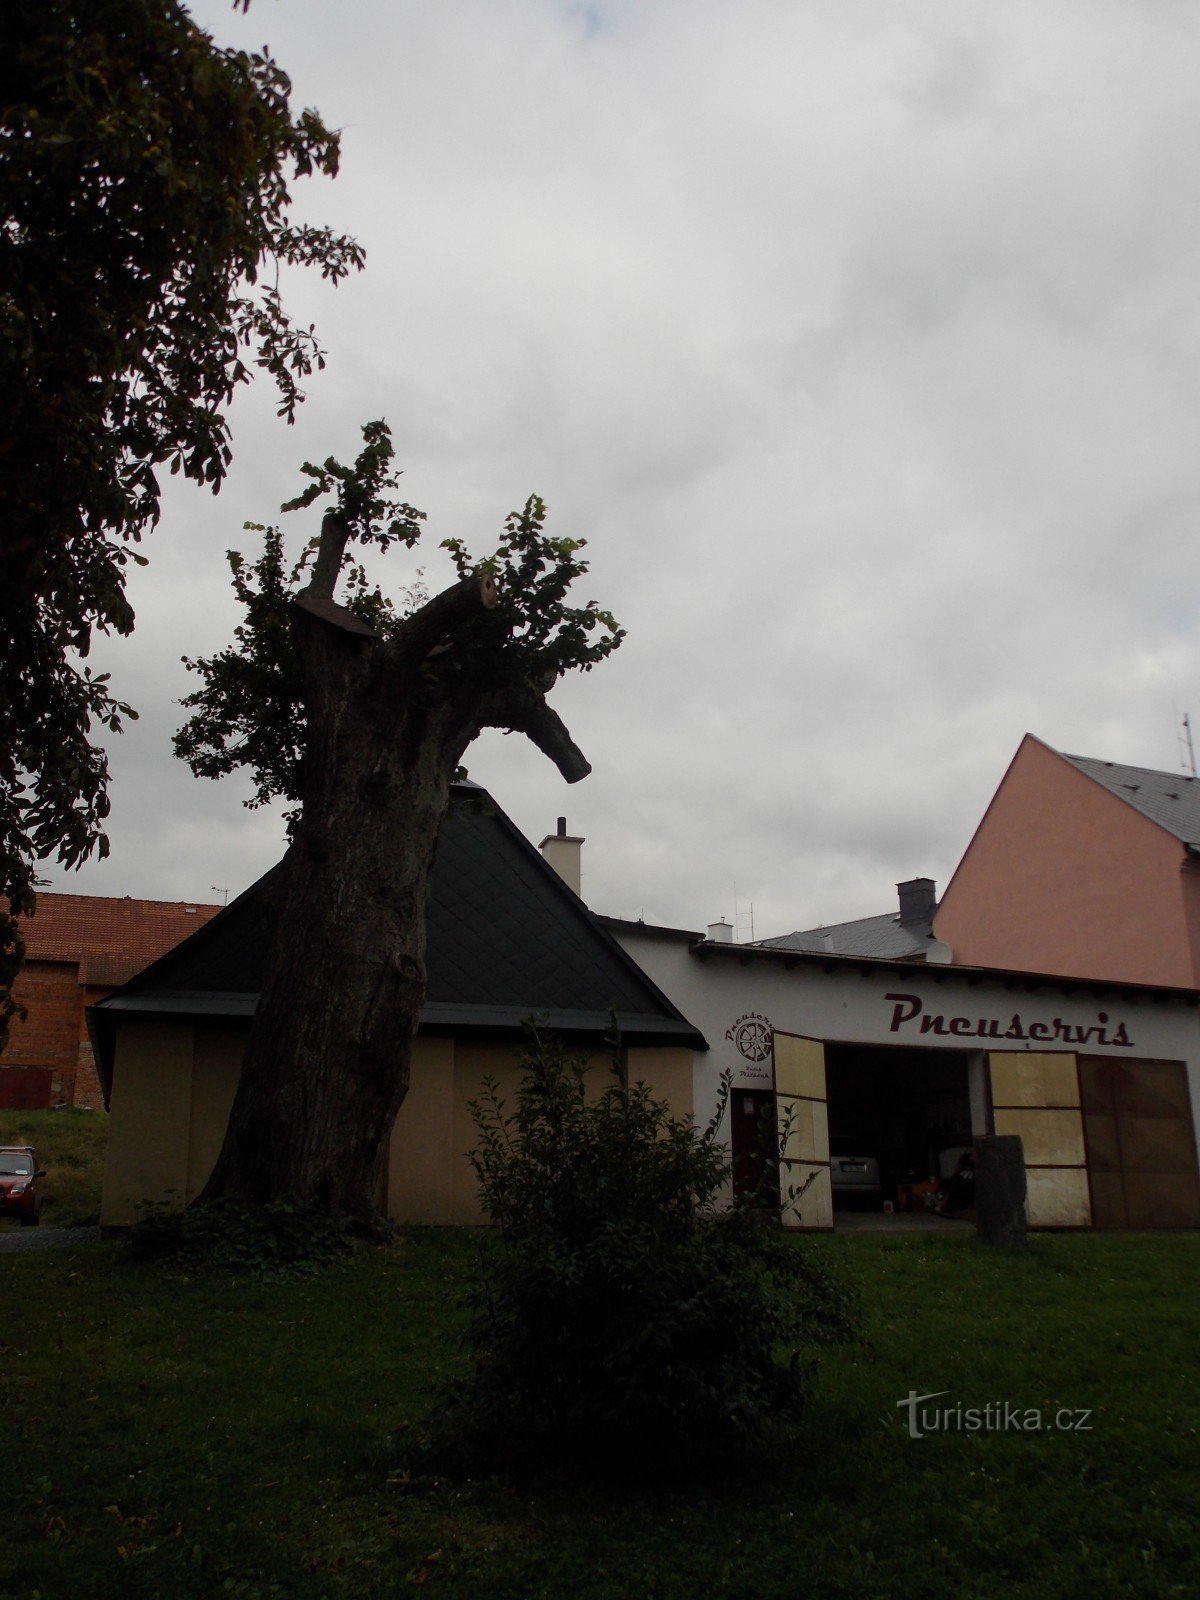 Tilo de JA Komenský, un árbol conmemorativo en Rýmařov